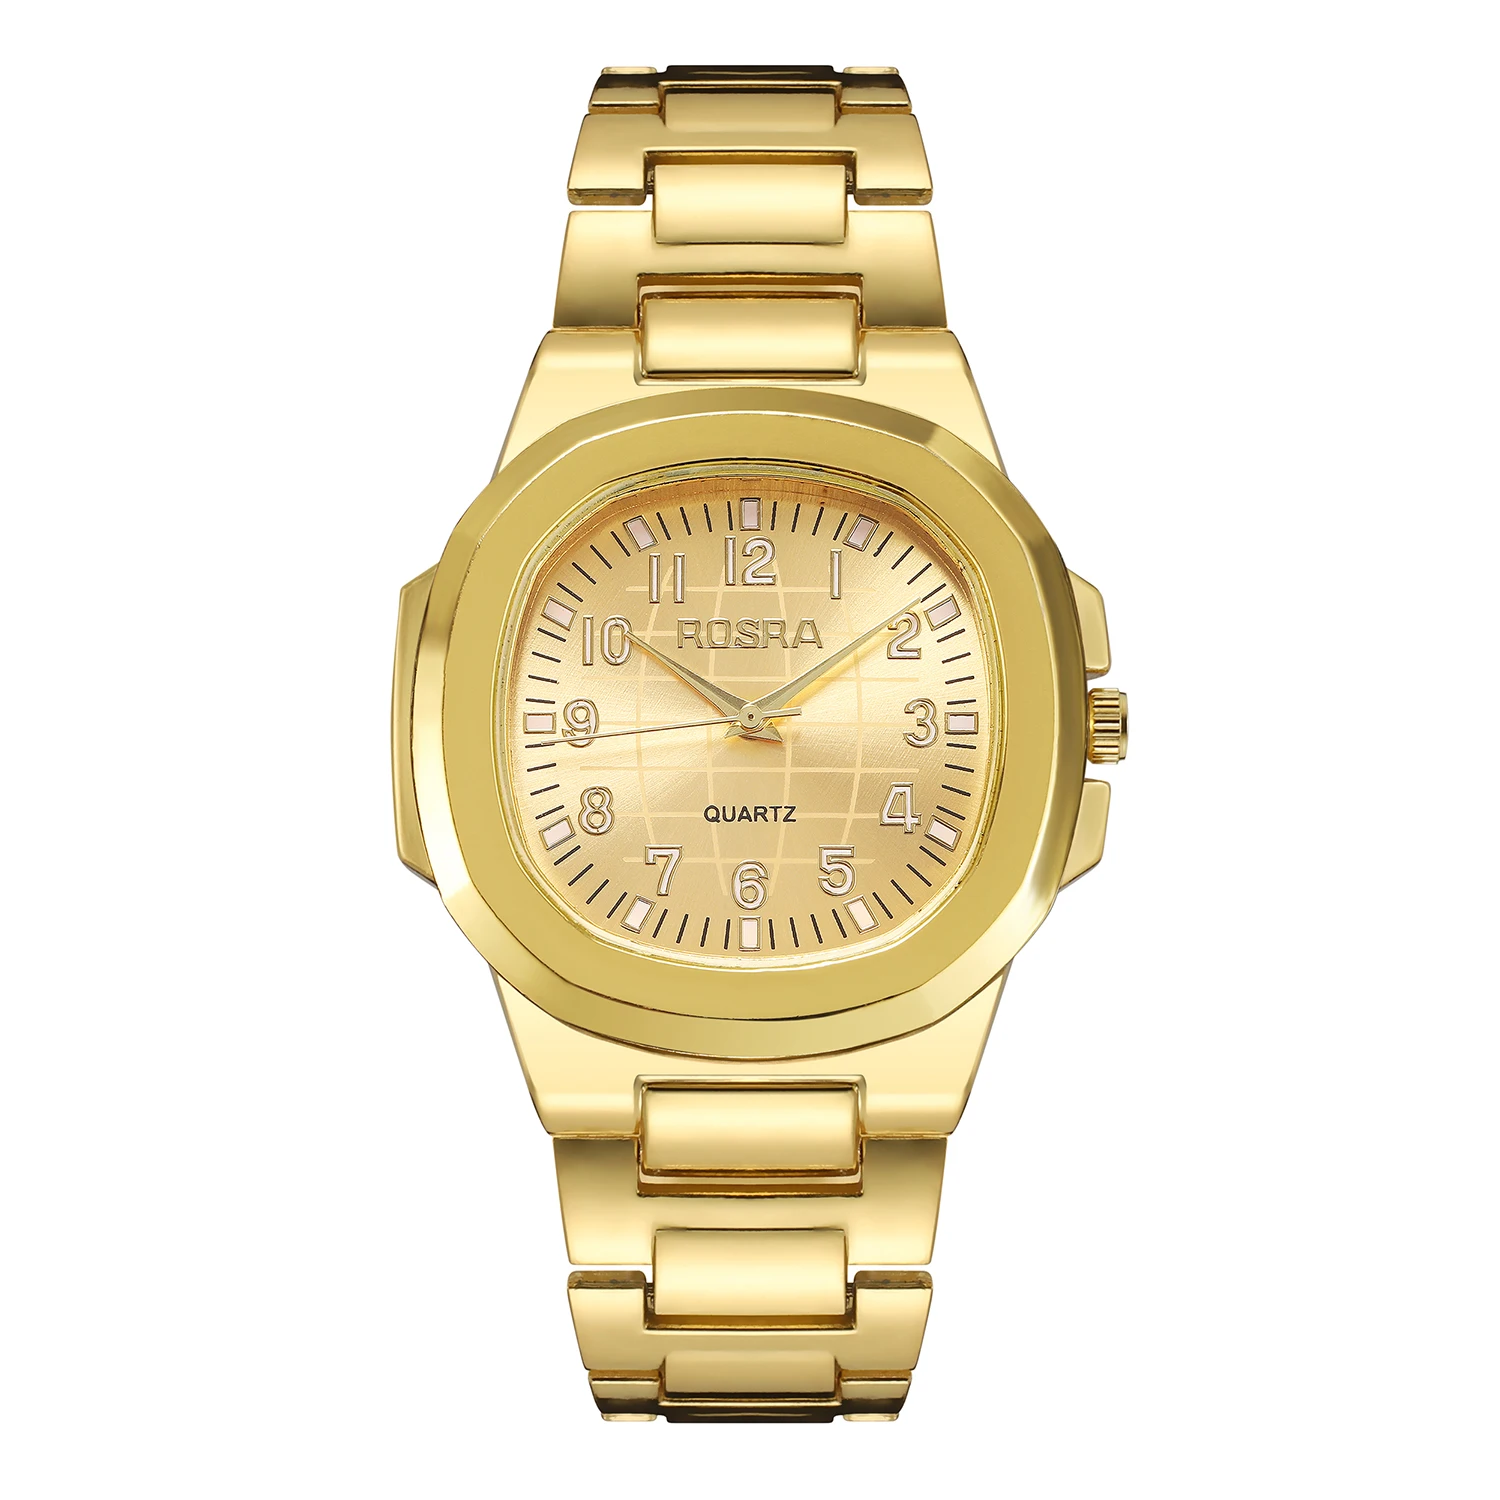 Wholesale Explosive Men's and Women's Watches Alloy Calendar Trend Fashion Quartz Watches